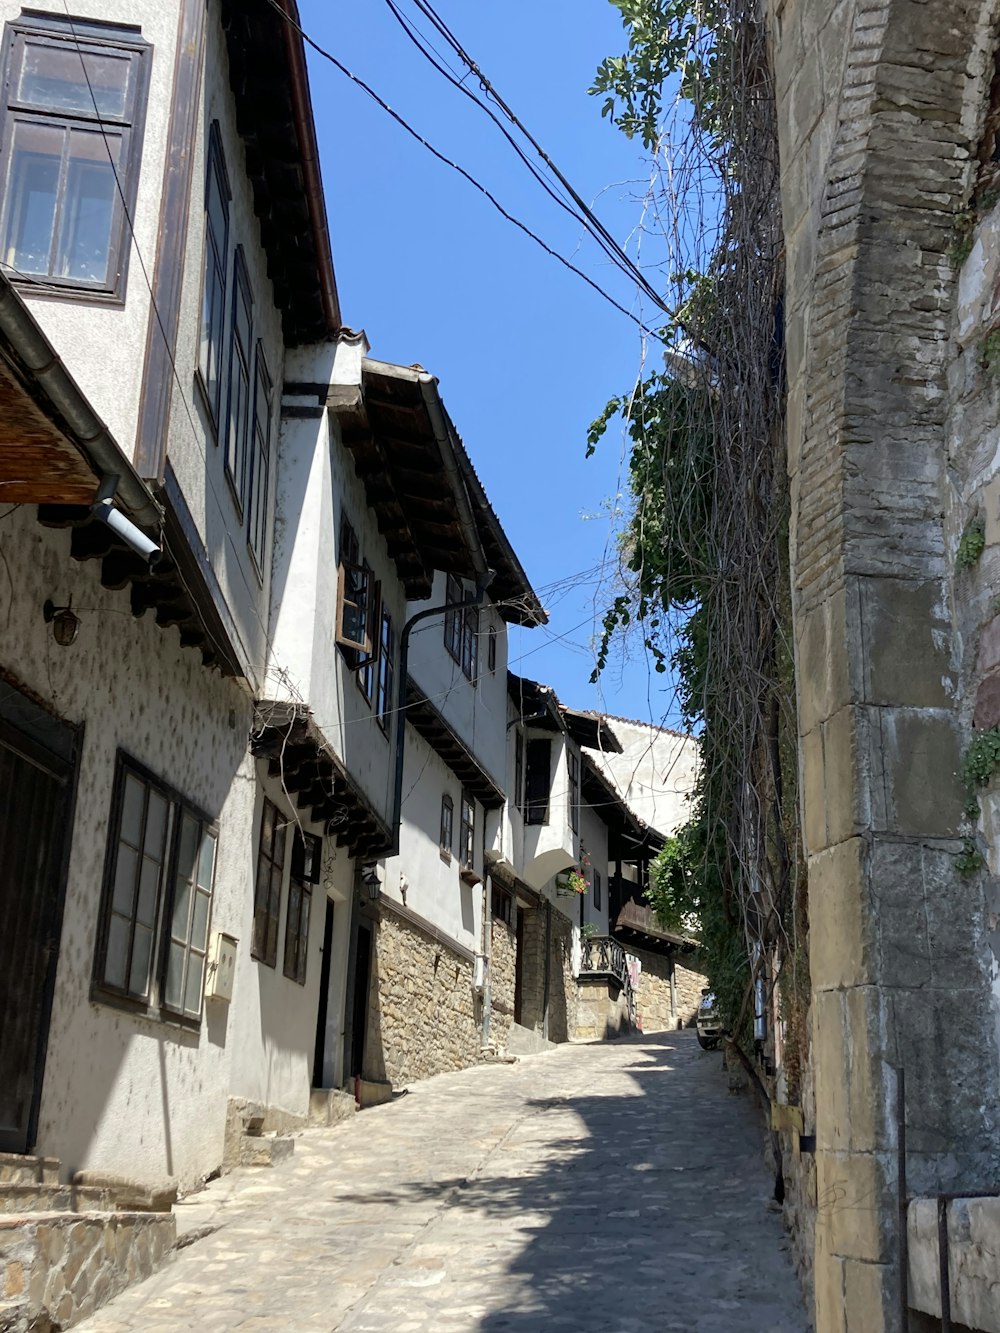 a narrow street between buildings